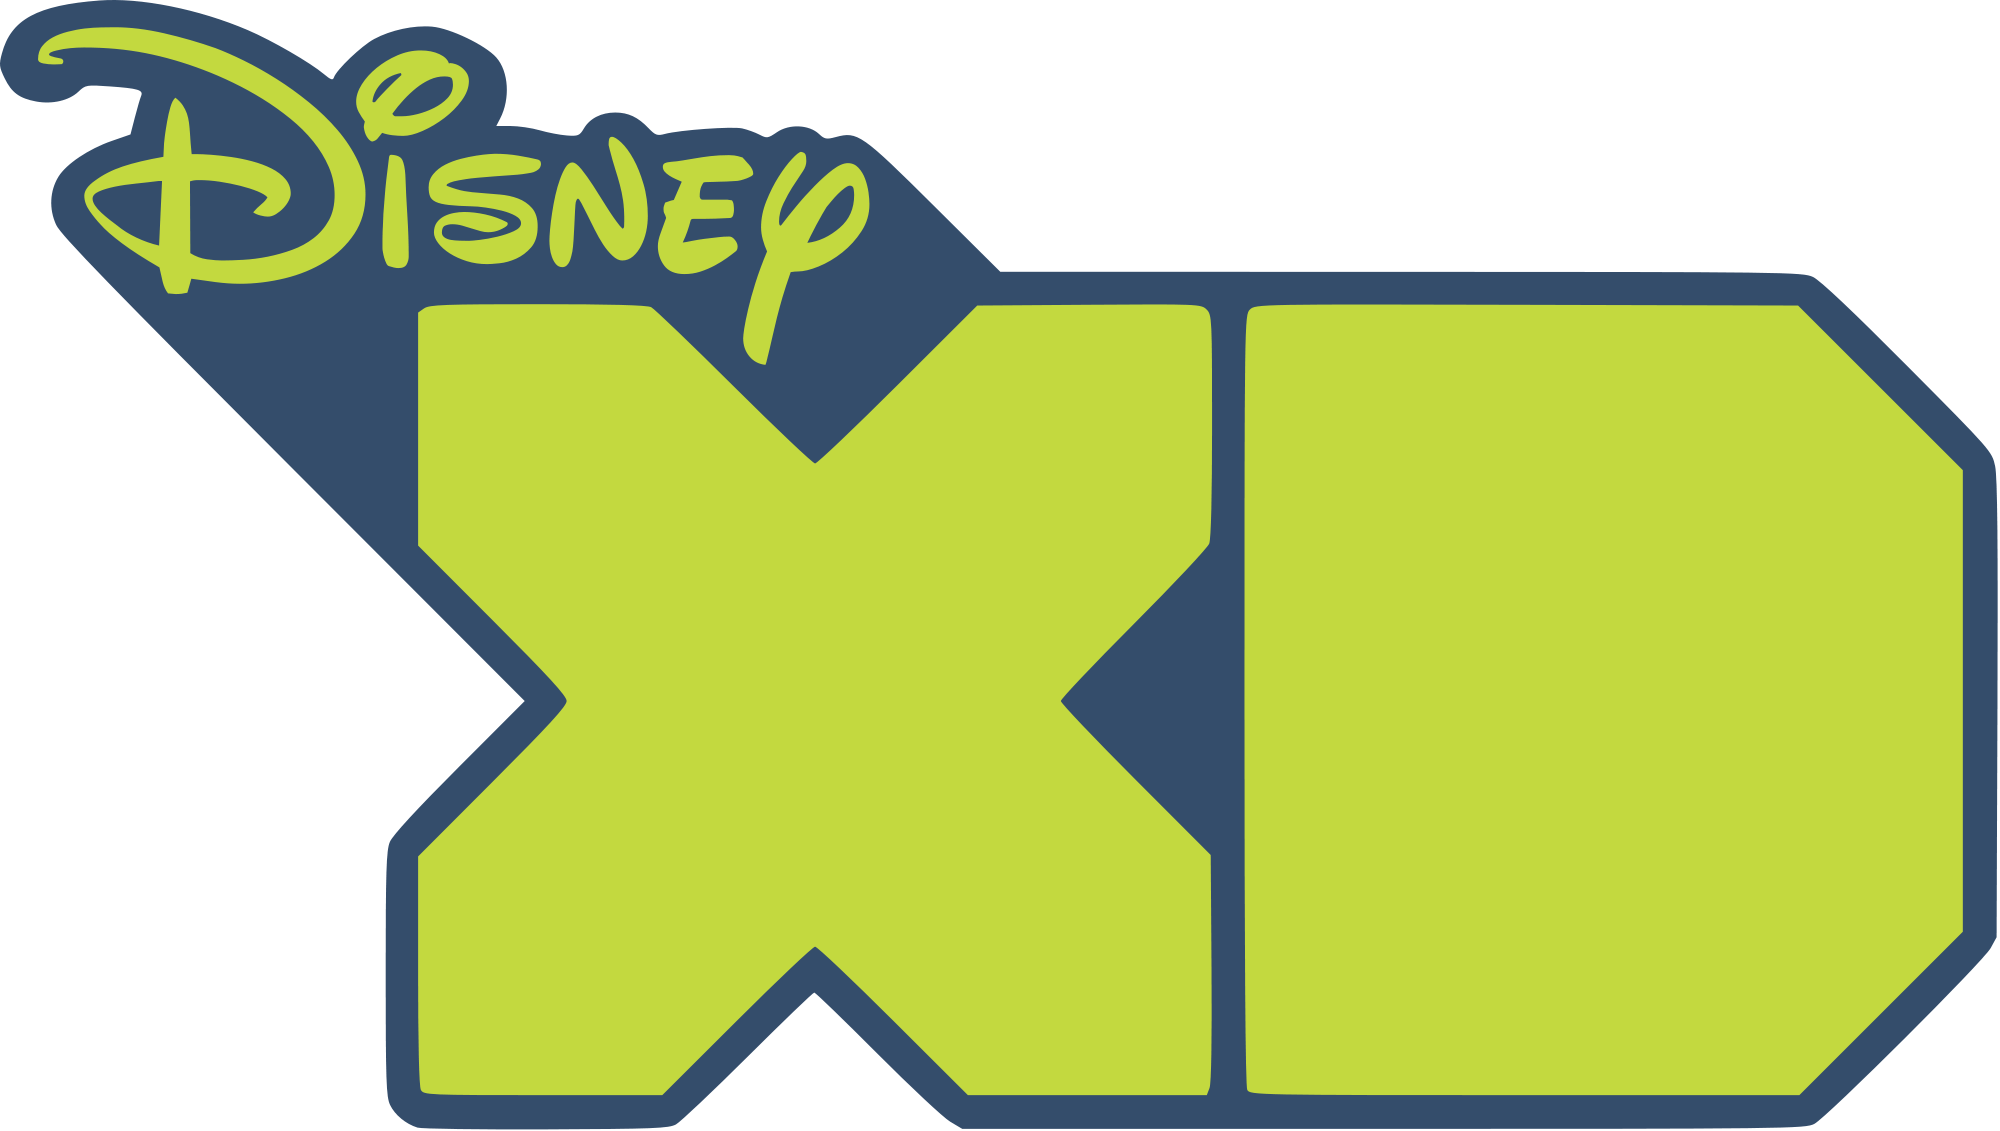 Disney XD 2017 Logo - Disney XD | Disney Wiki | FANDOM powered by Wikia